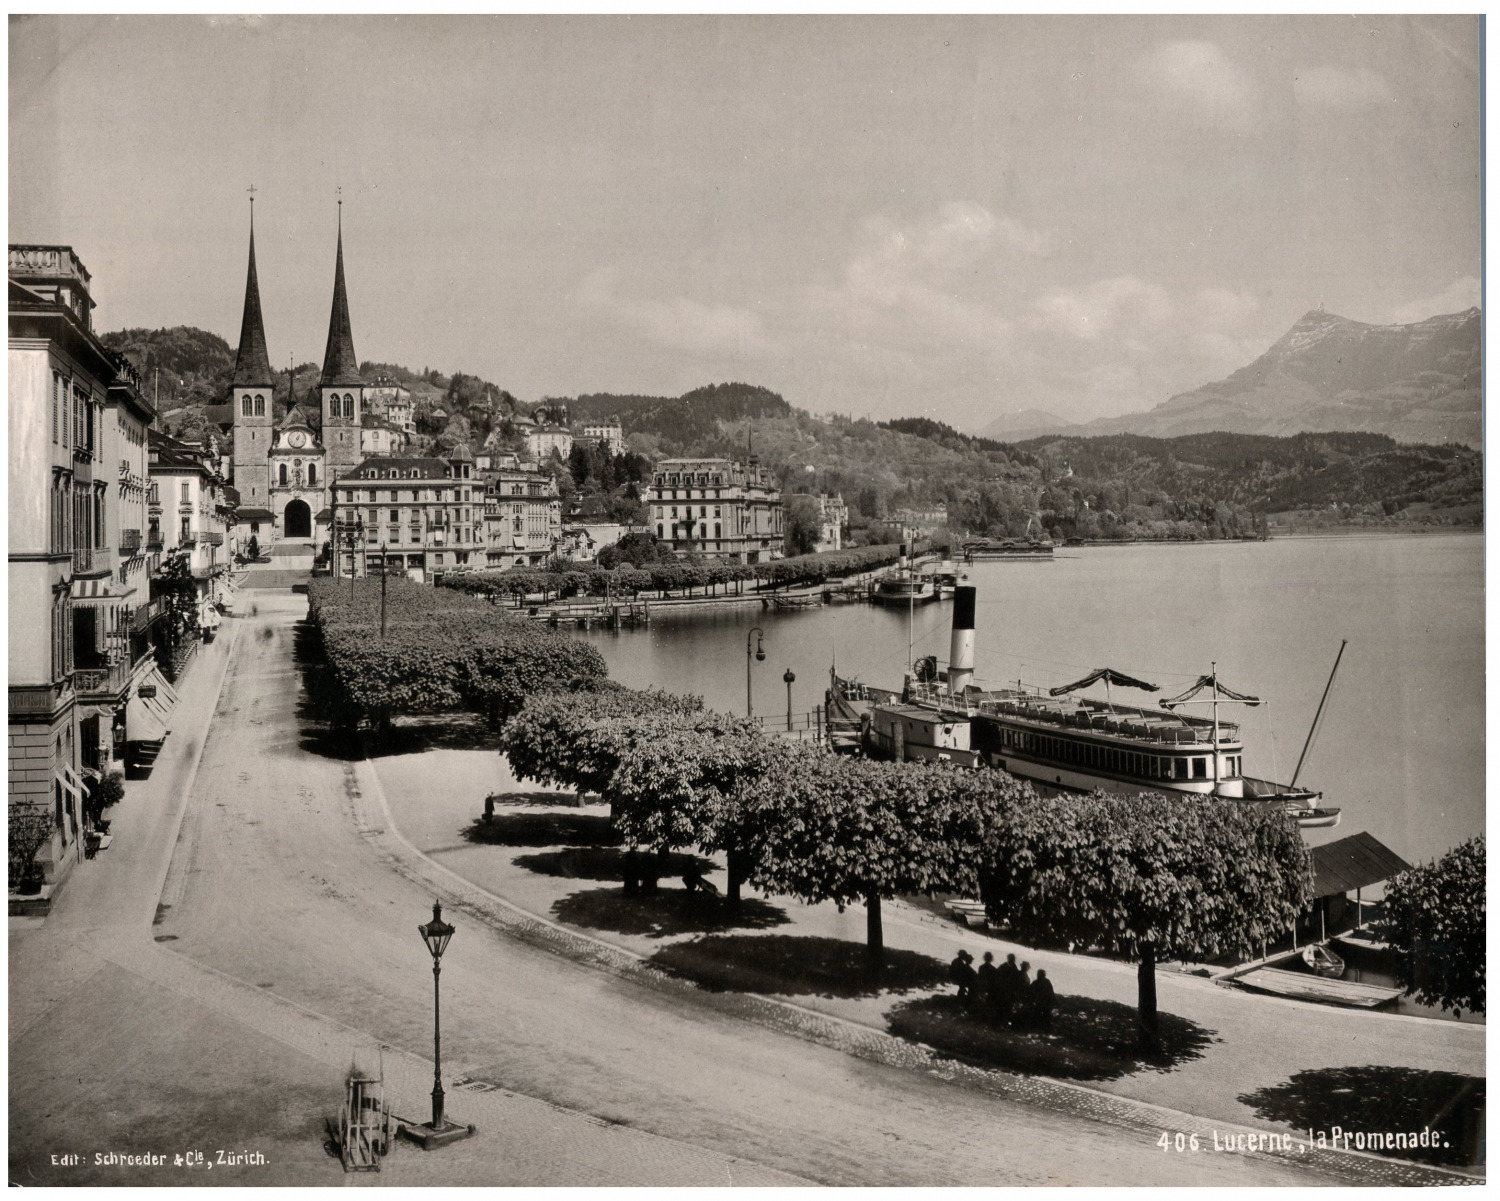 Schroeder. Switzerland, Lucerne, La Promenade Vintage print.  Photomechanics 21